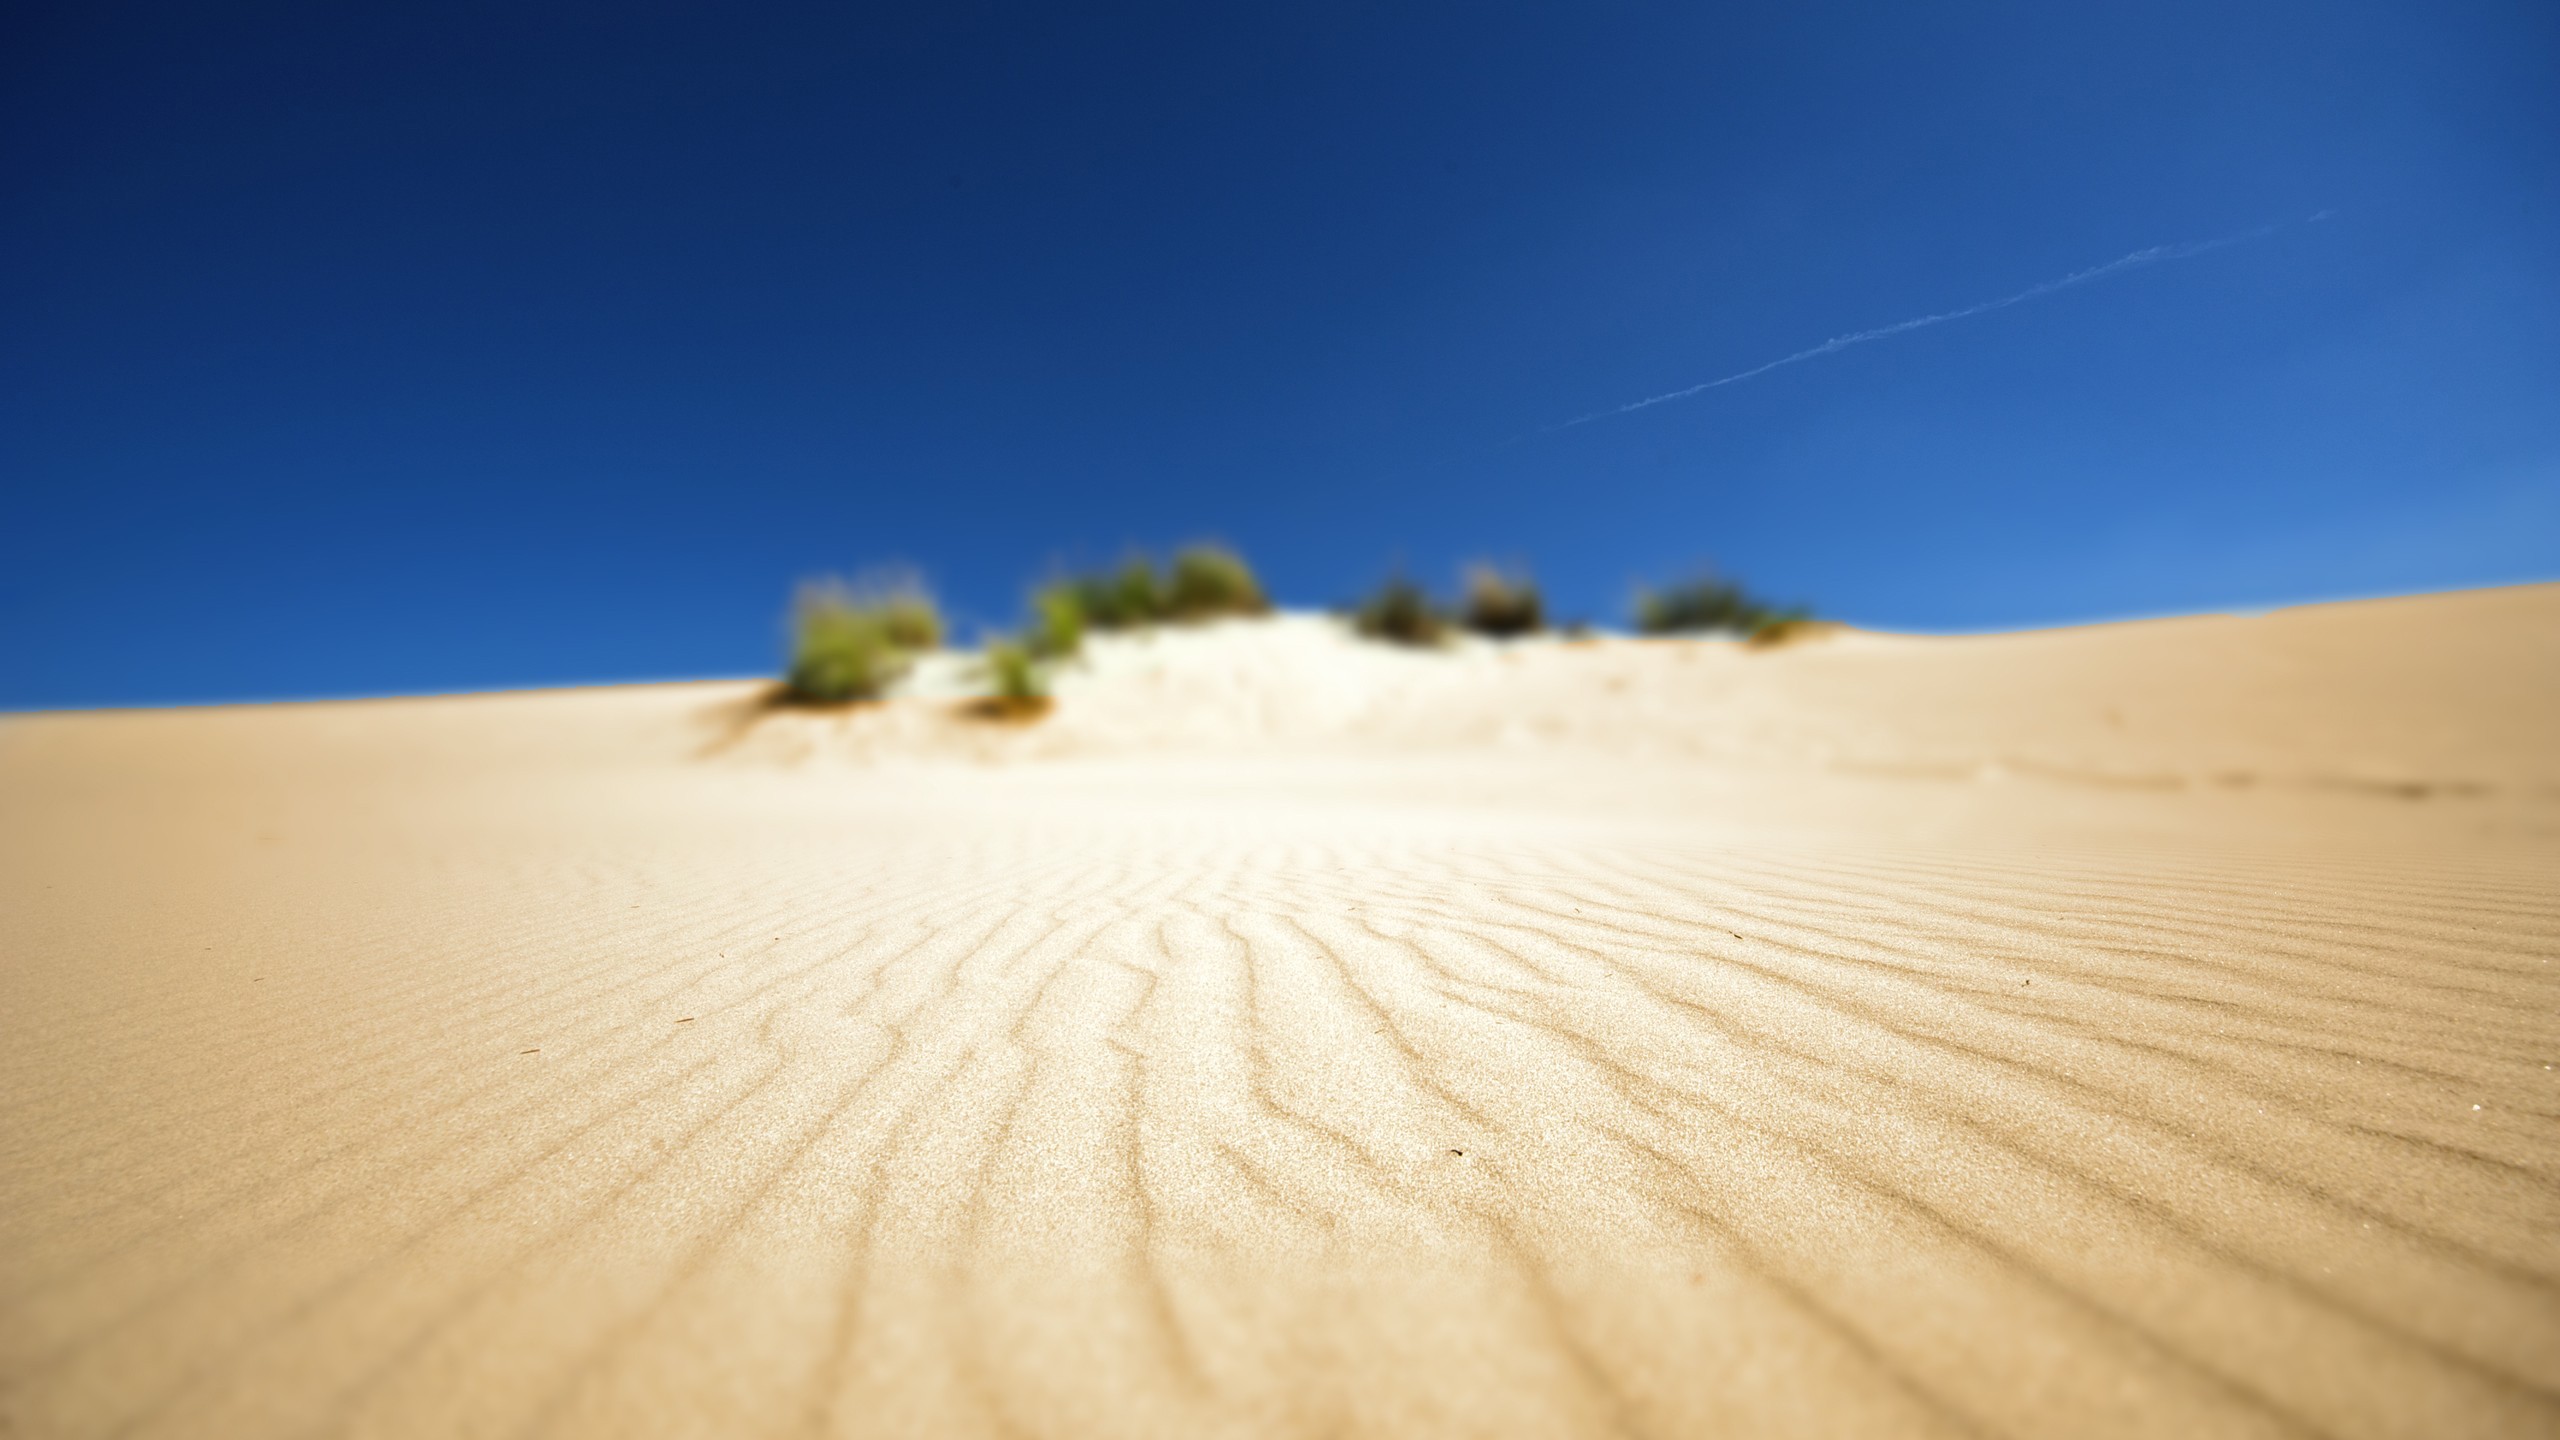 General 2560x1440 desert depth of field tilt shift sky nature sand blue dunes shrubs